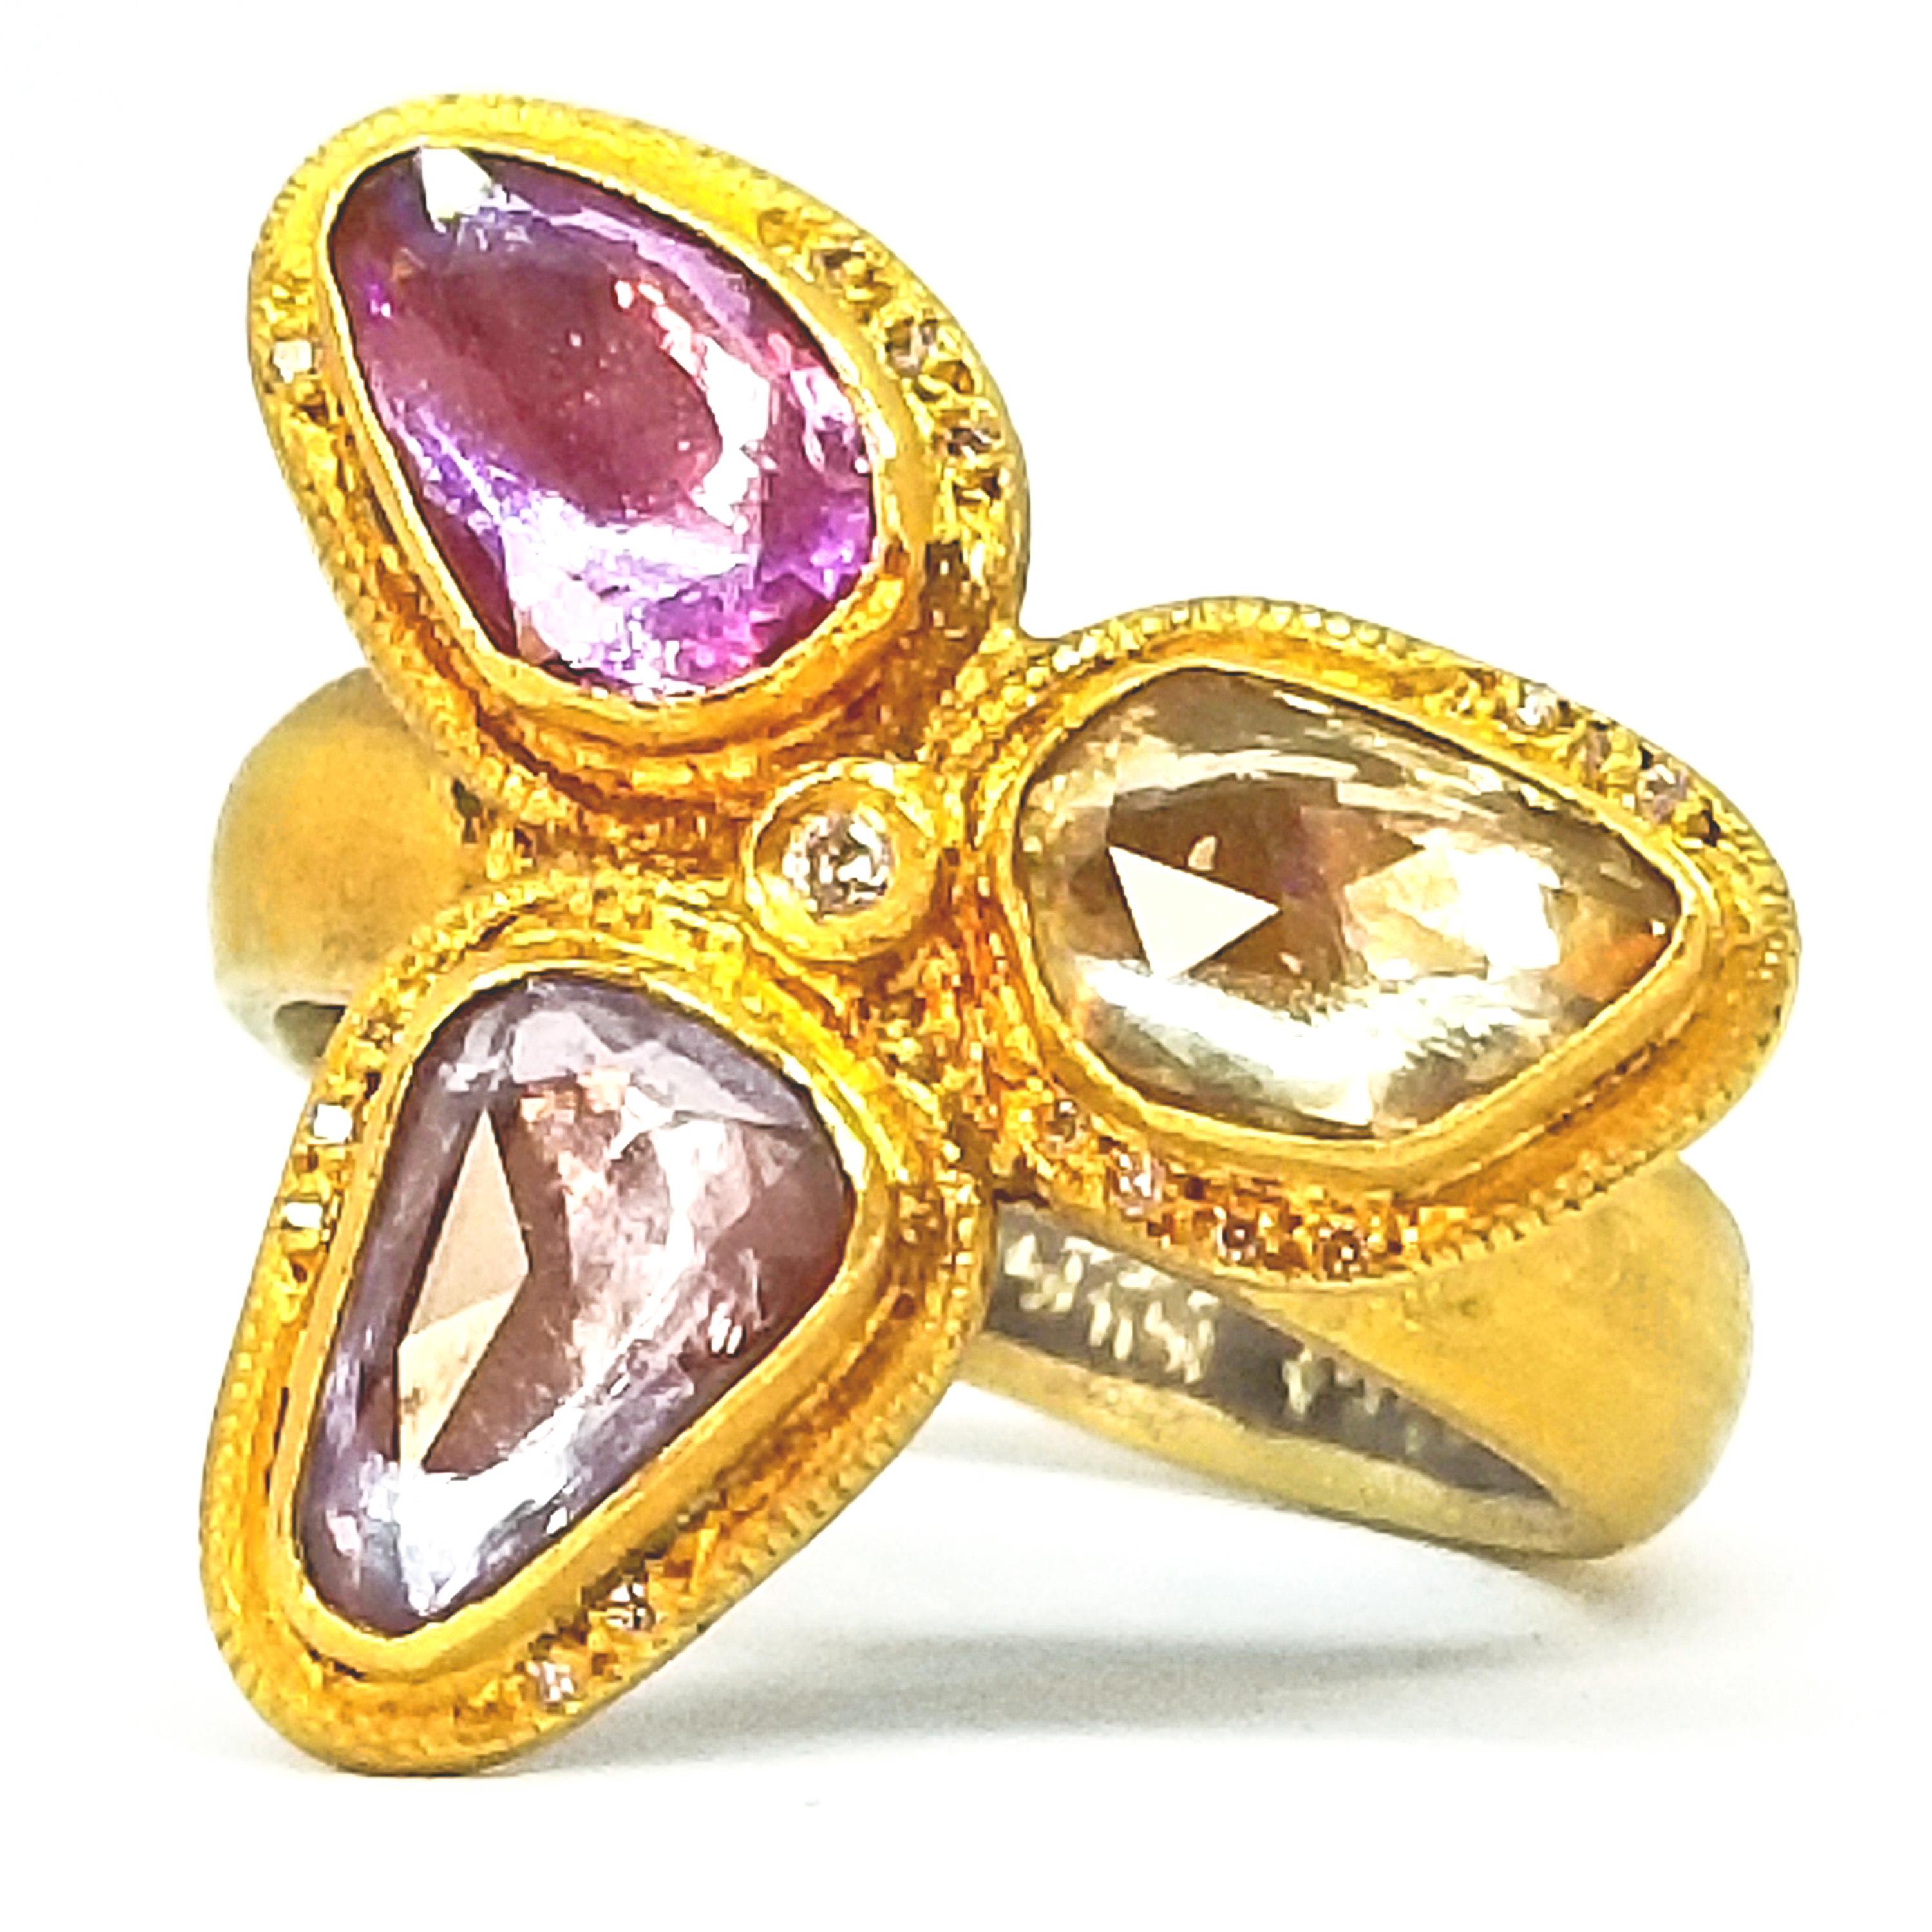 Kurtulan Handmade 2.72 Carat Rose Cut Sapphires Diamond Floret Ring Signed 24K